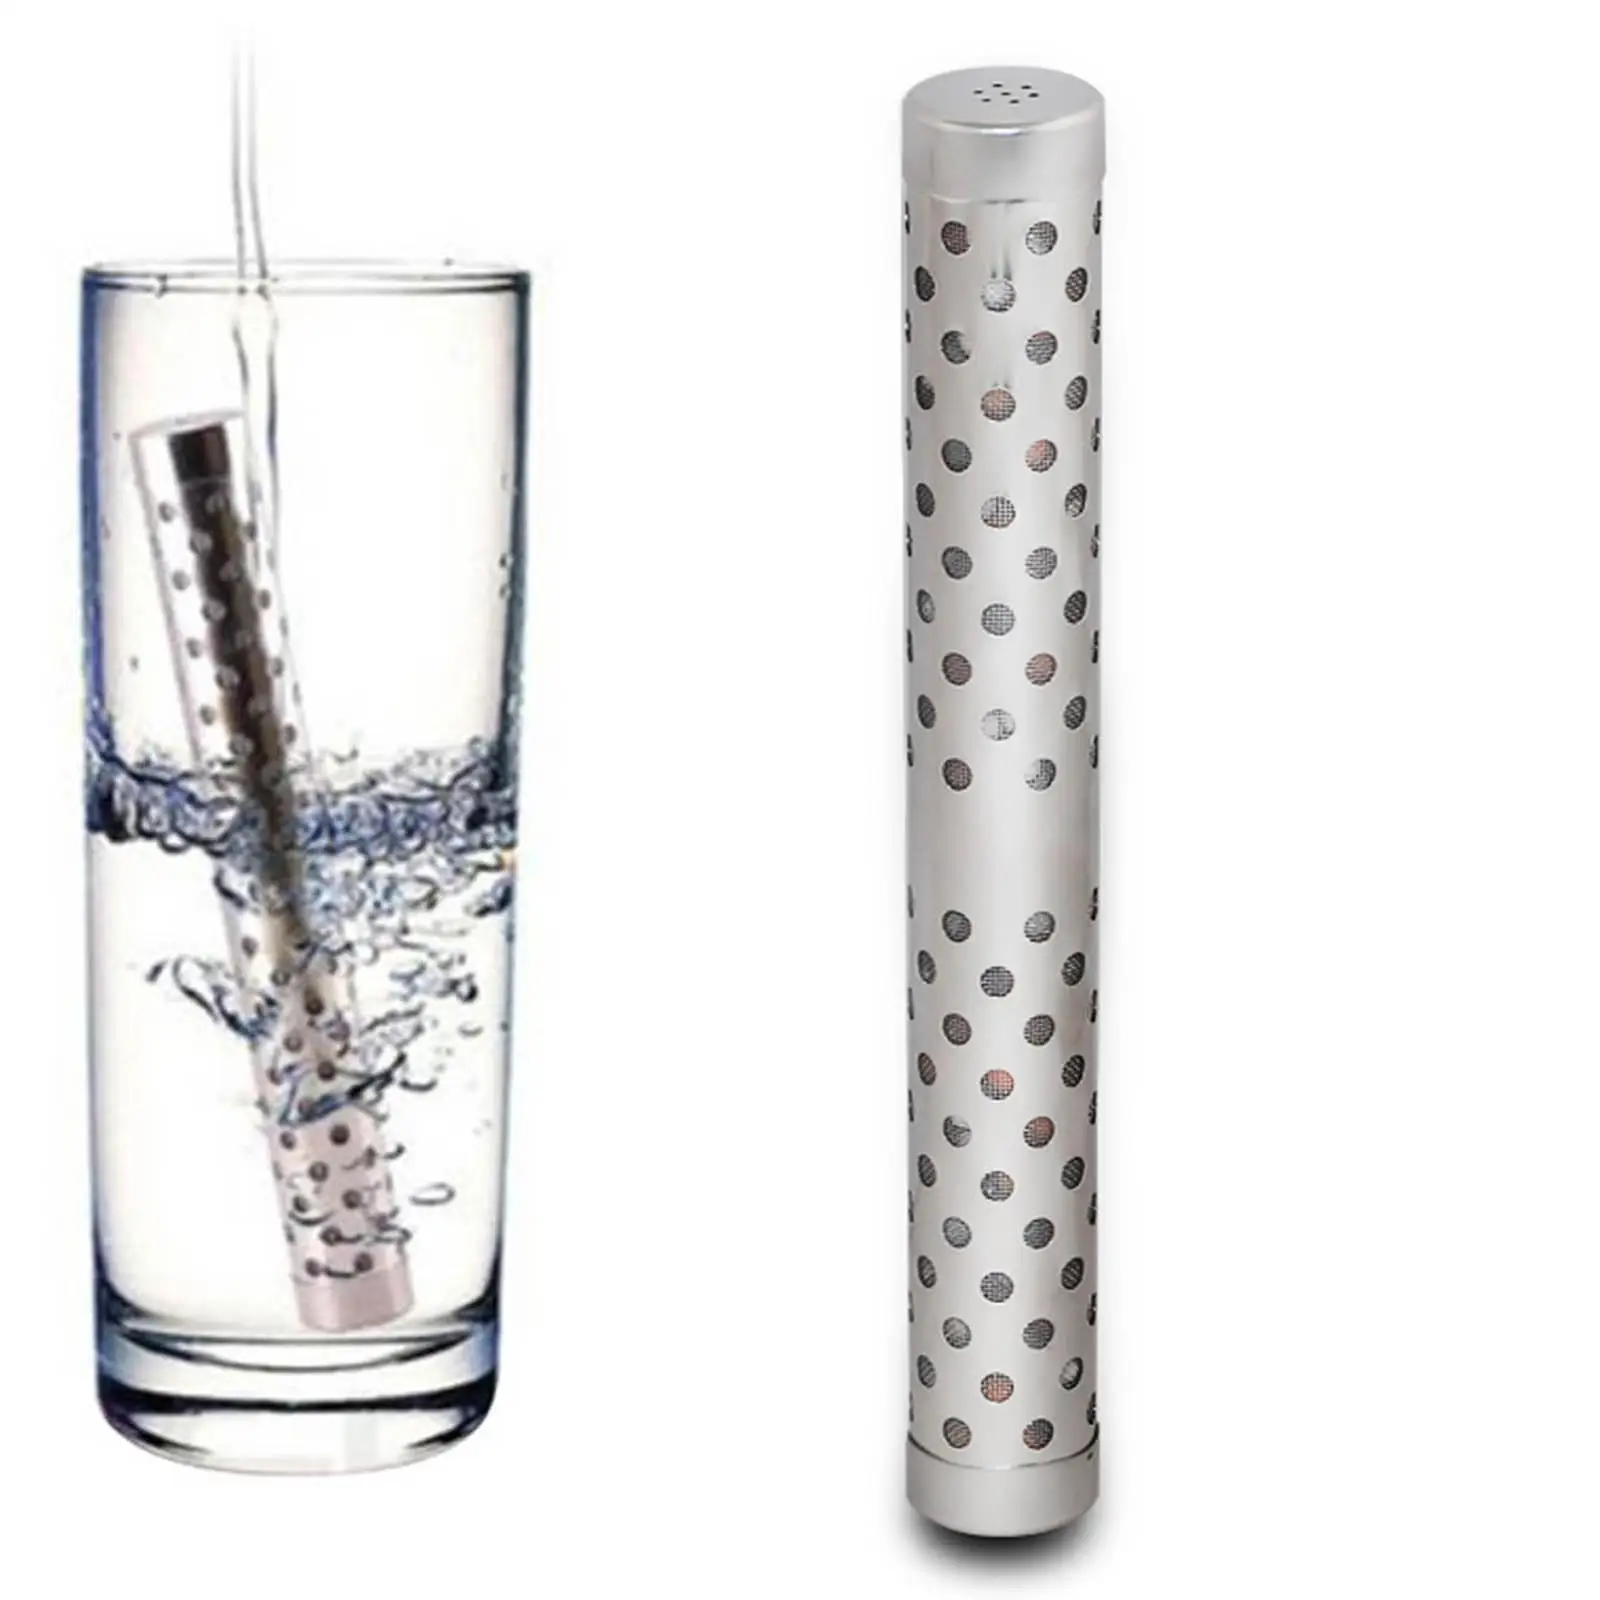 Water Ionizer Stick Portable Health Supplies Hydrogen Mineral Purifier Small Stainless Alkaline Hydrogen Travel